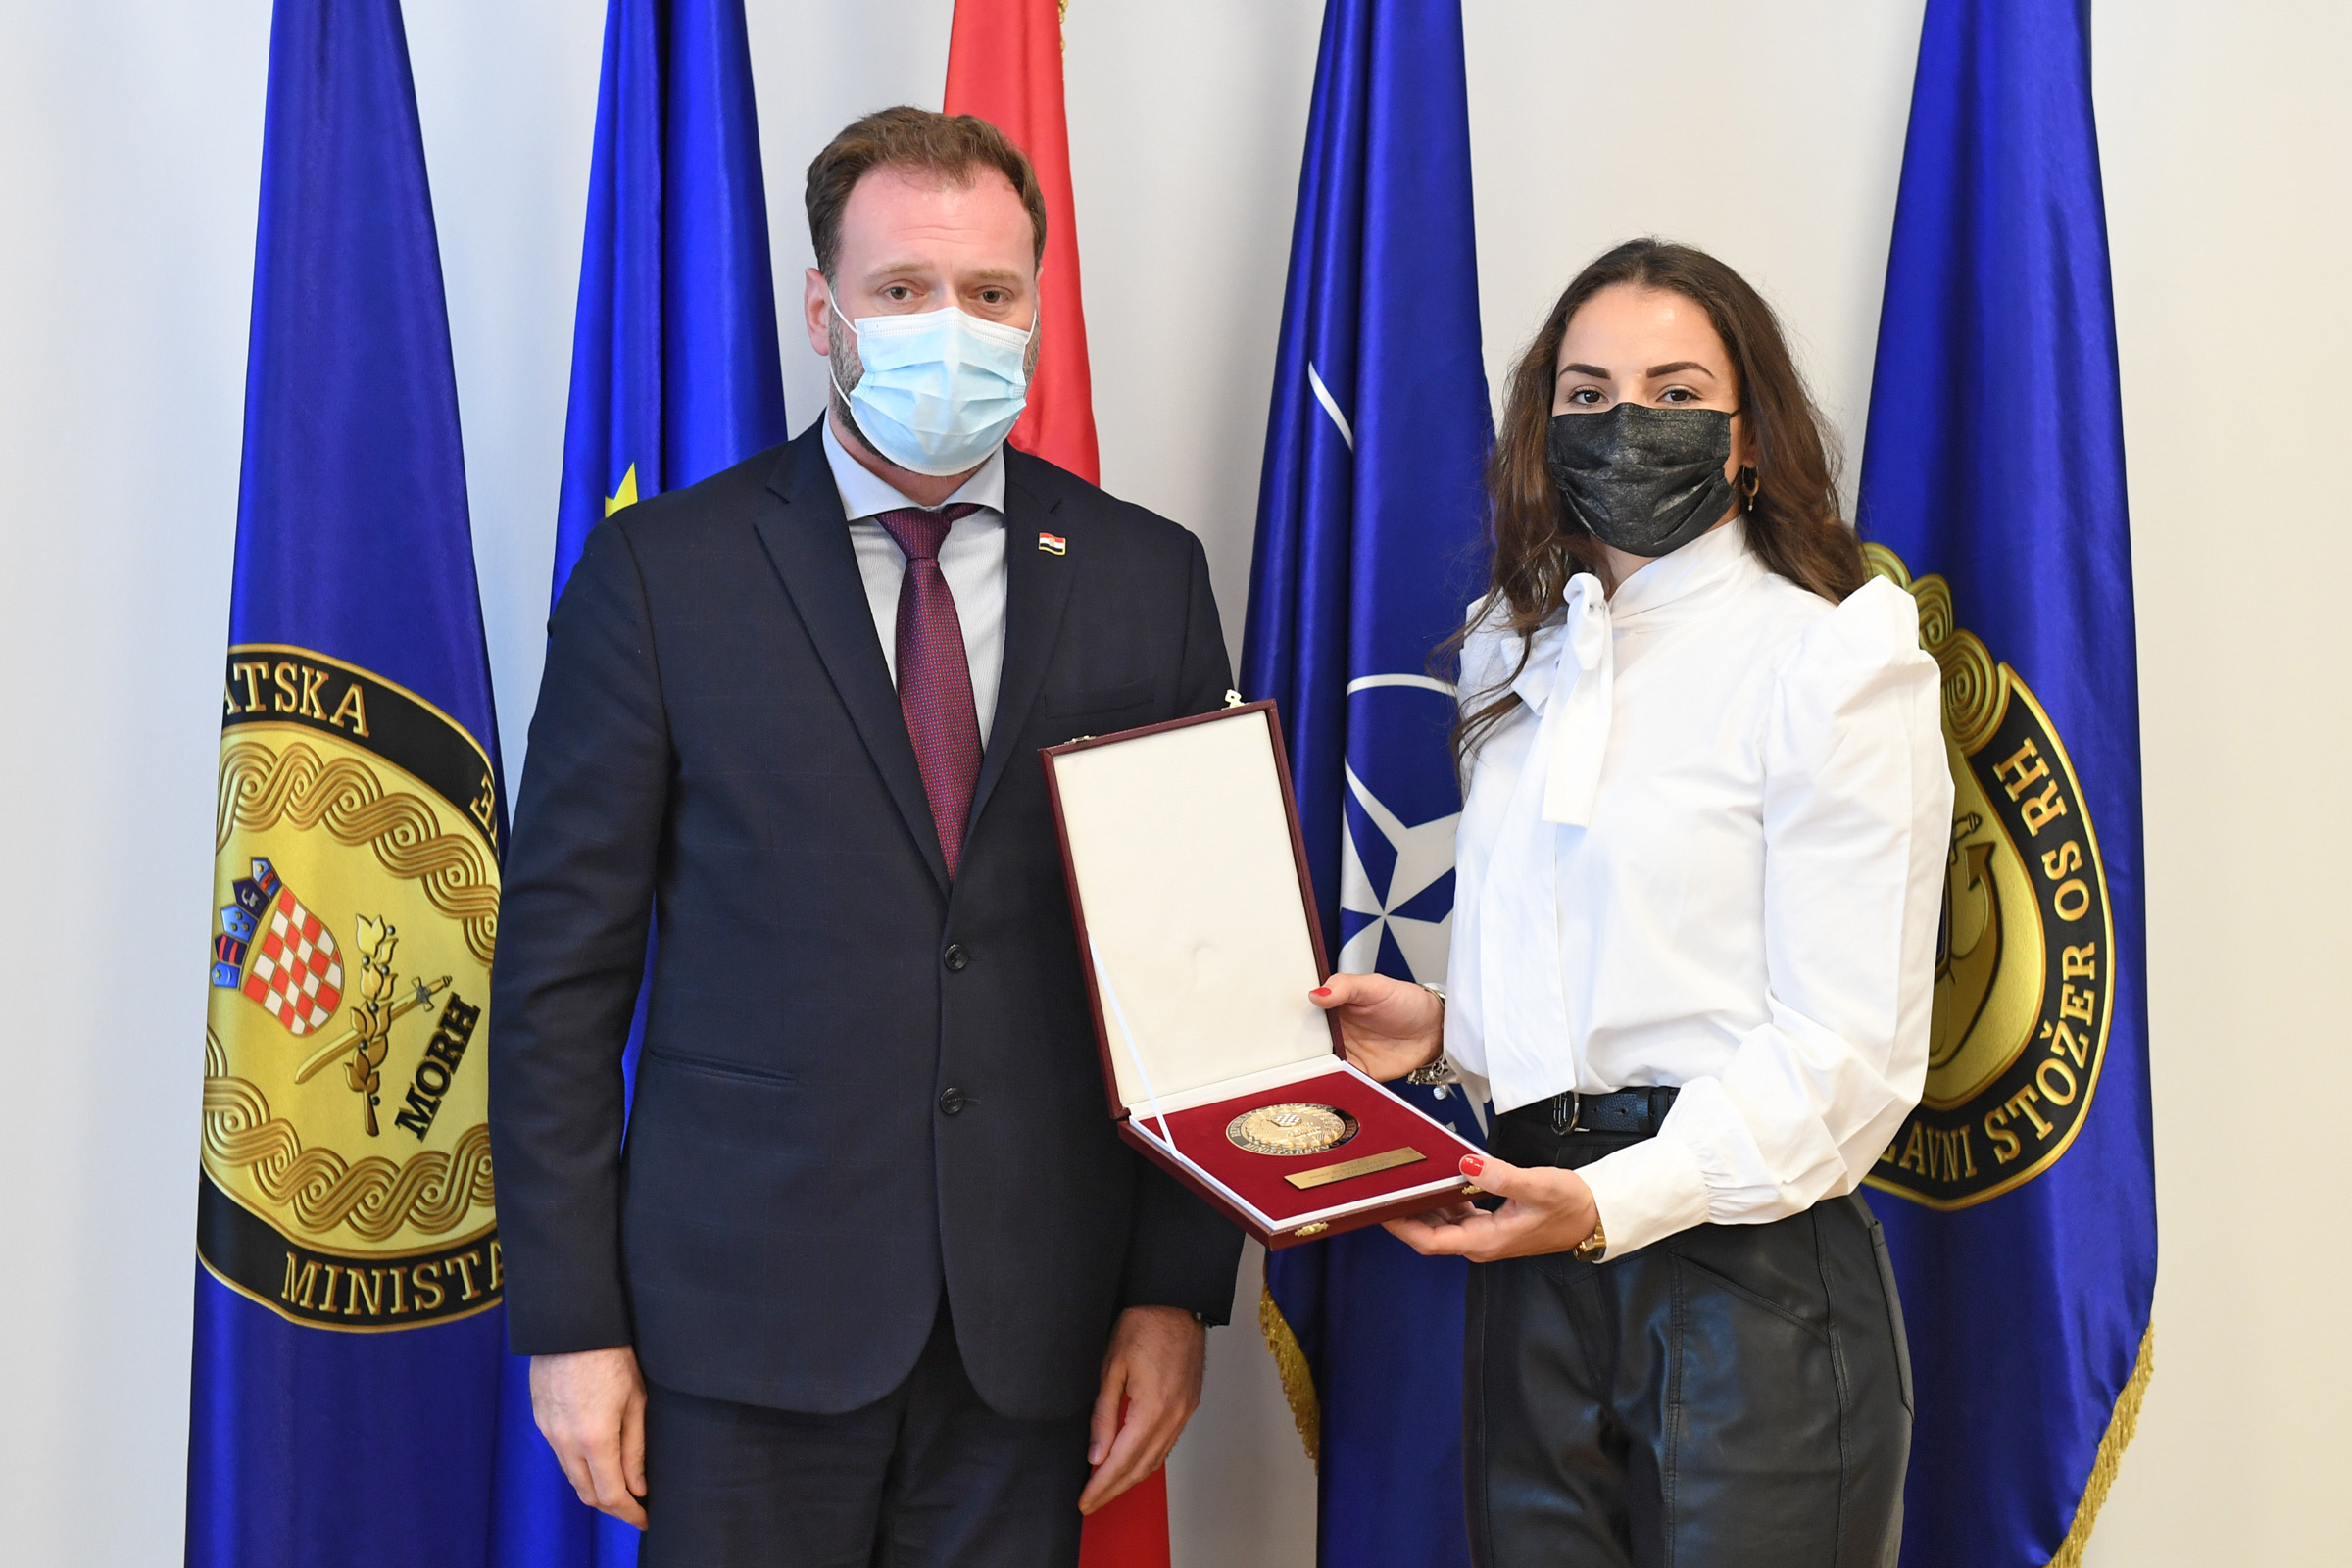 Netom prije strašnog potresa ministar Banožić uručio veliku zlatnu plaketu MORH-a Barbari Matić